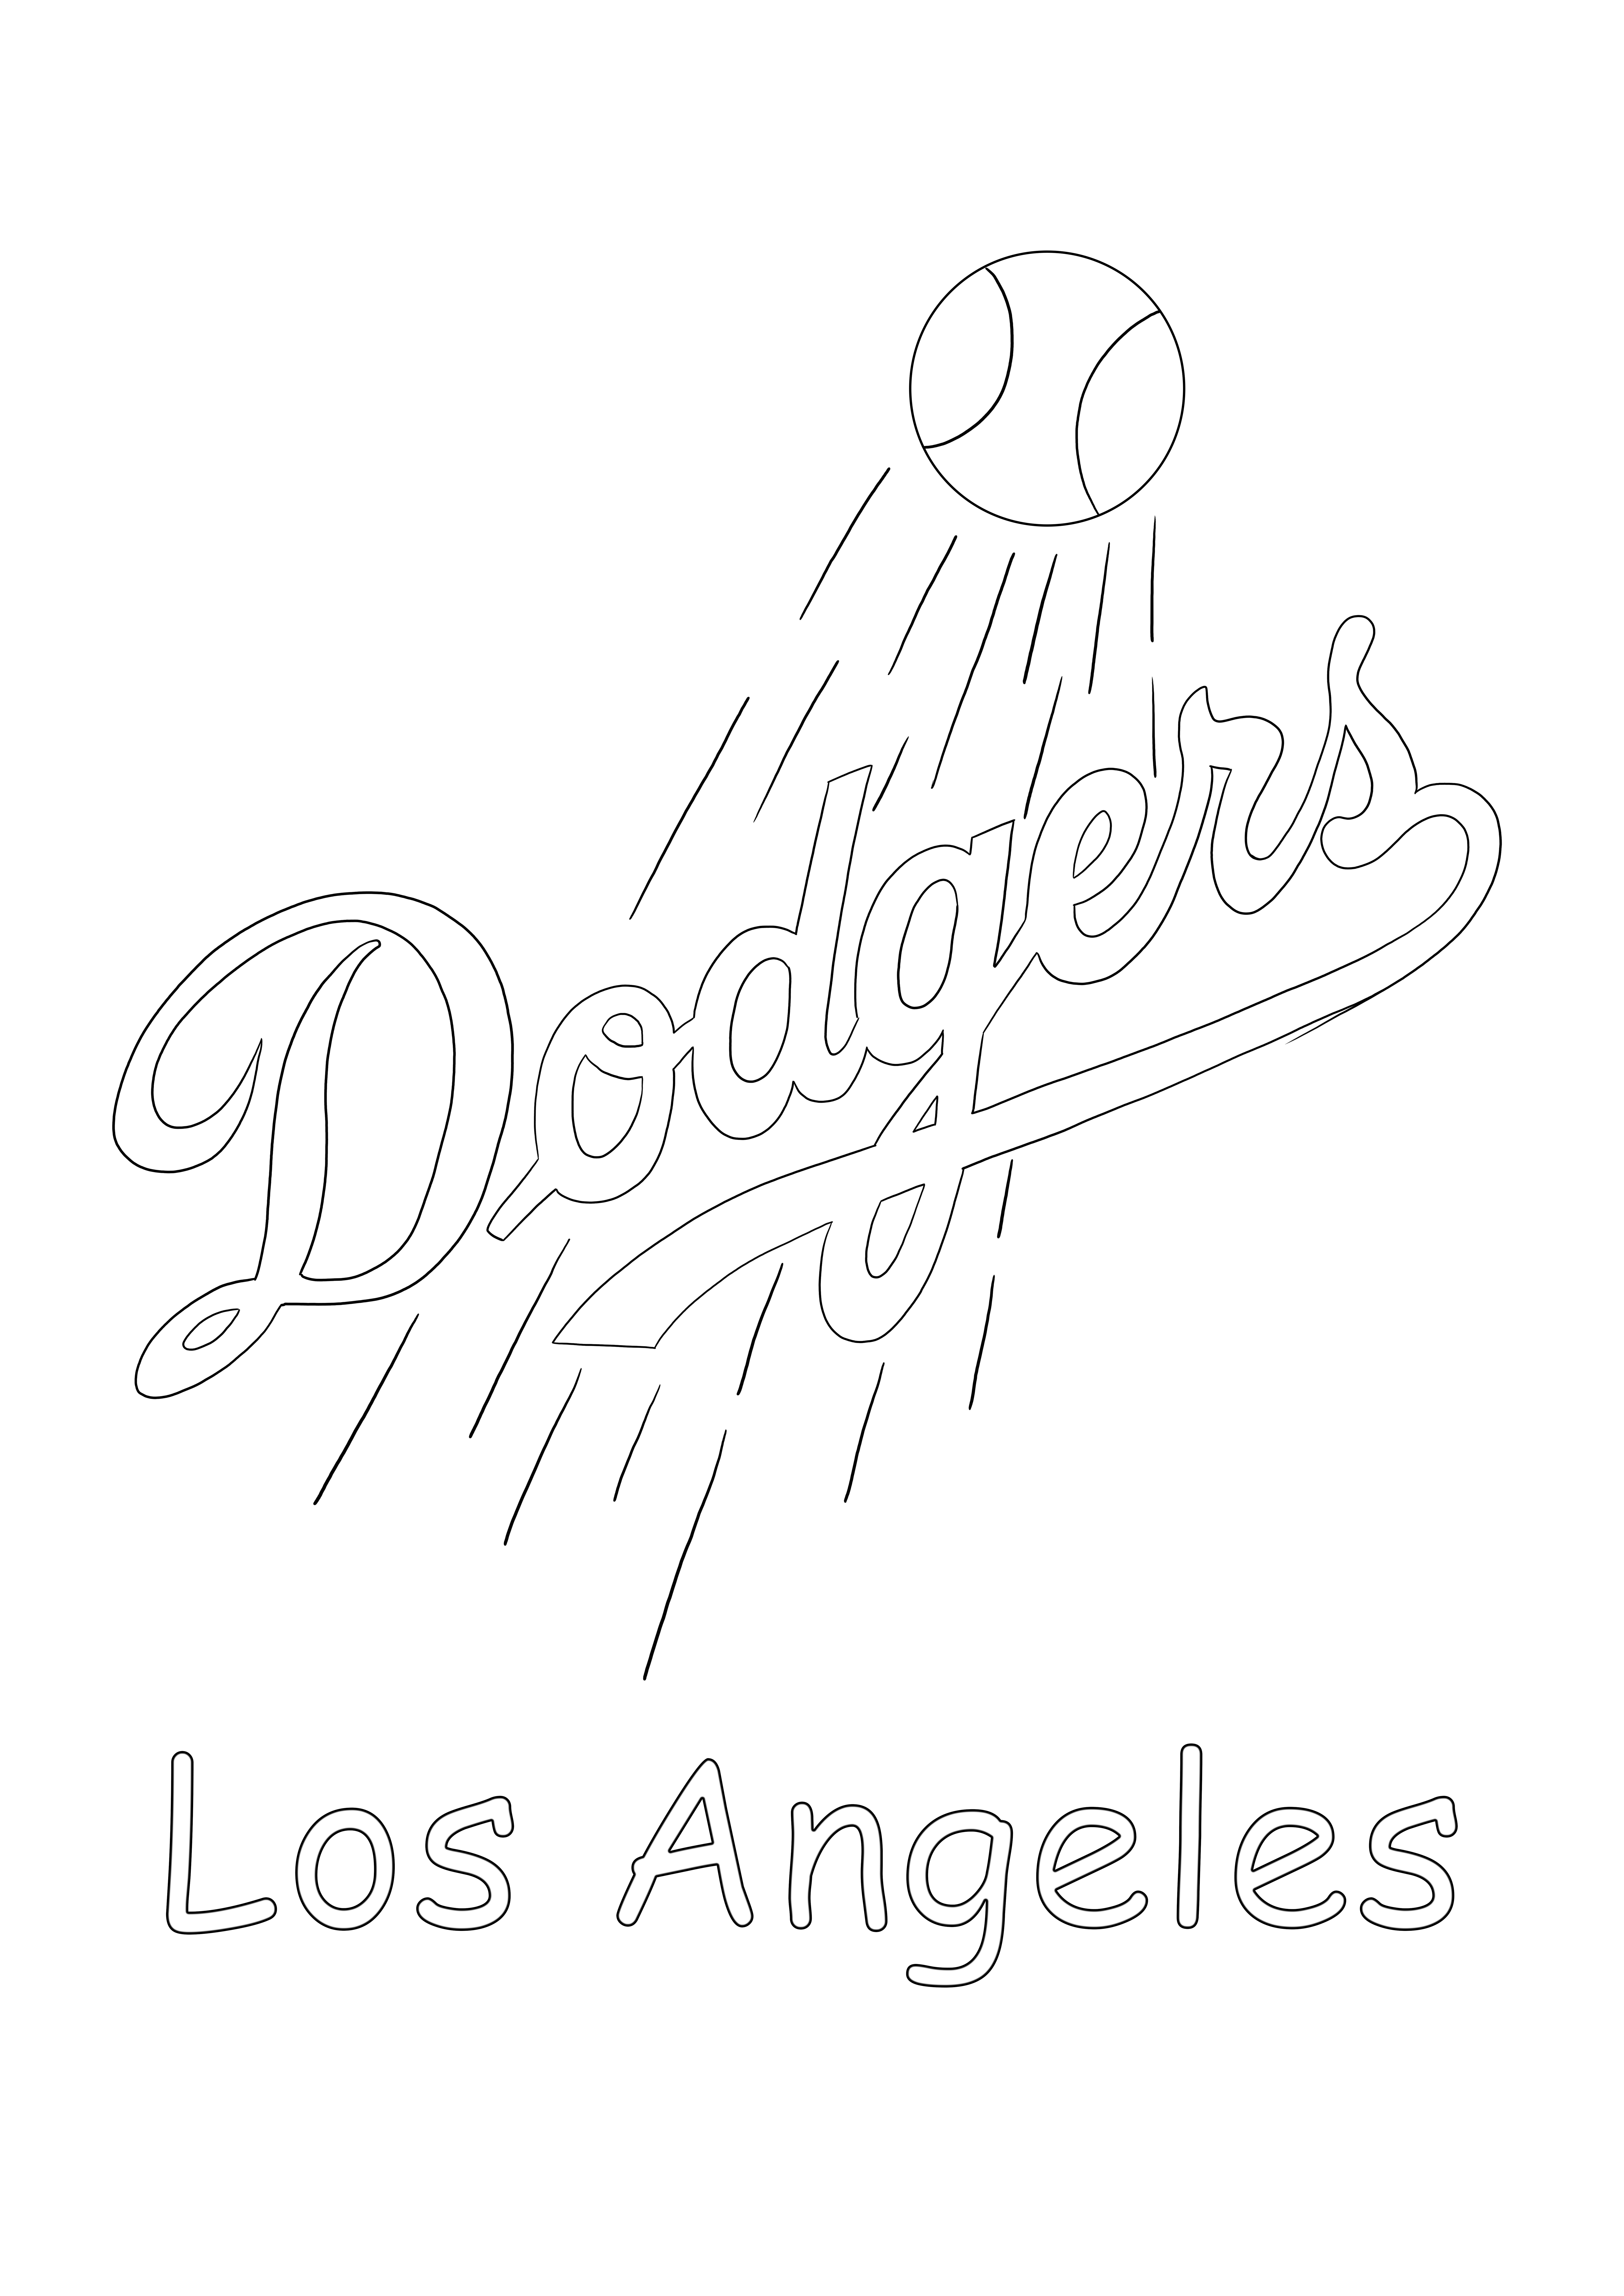 Logo Los Angeles Dodgers do bezpłatnego wydrukowania i pokolorowania dla wszystkich fanów MLB